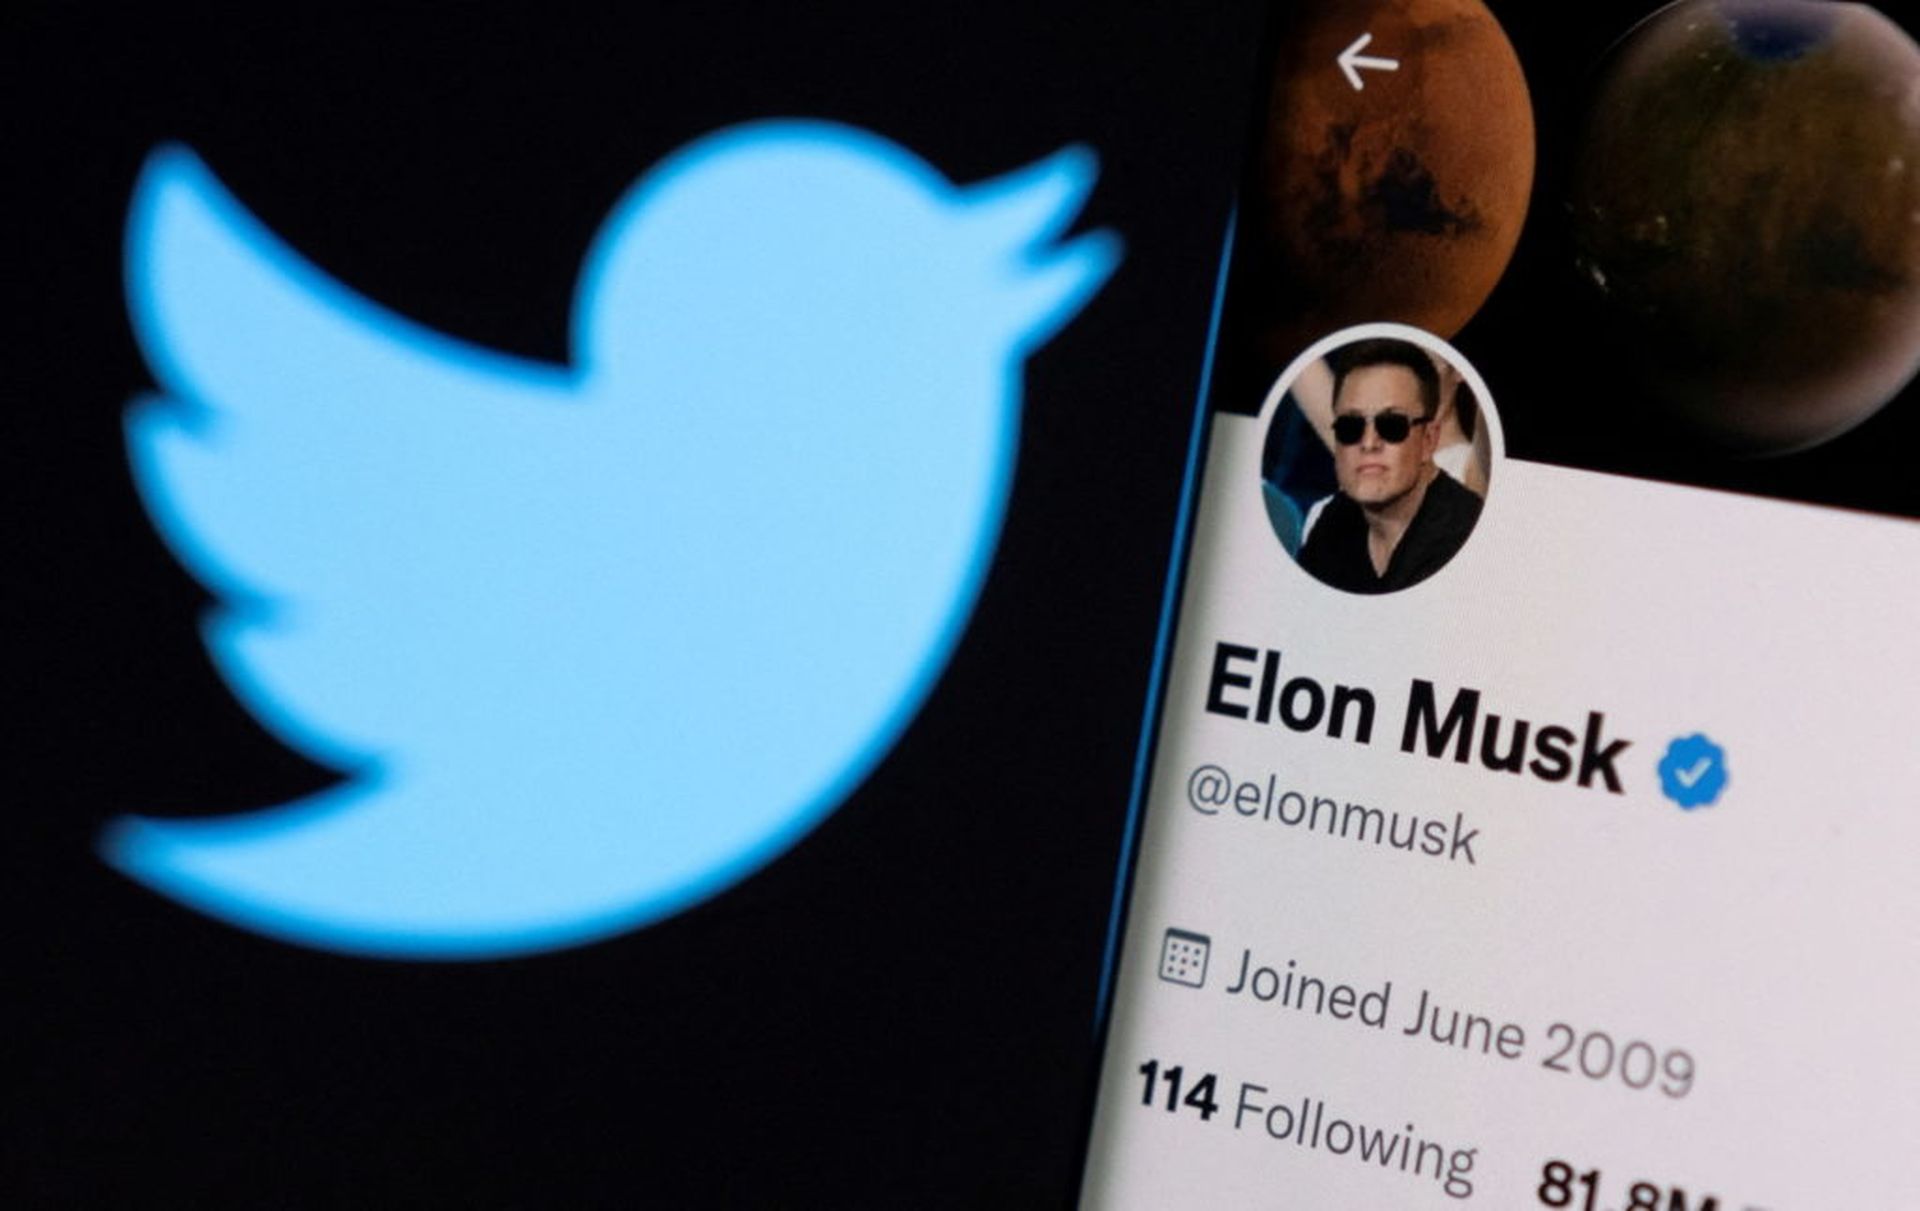 Elon fires Twitter CEO